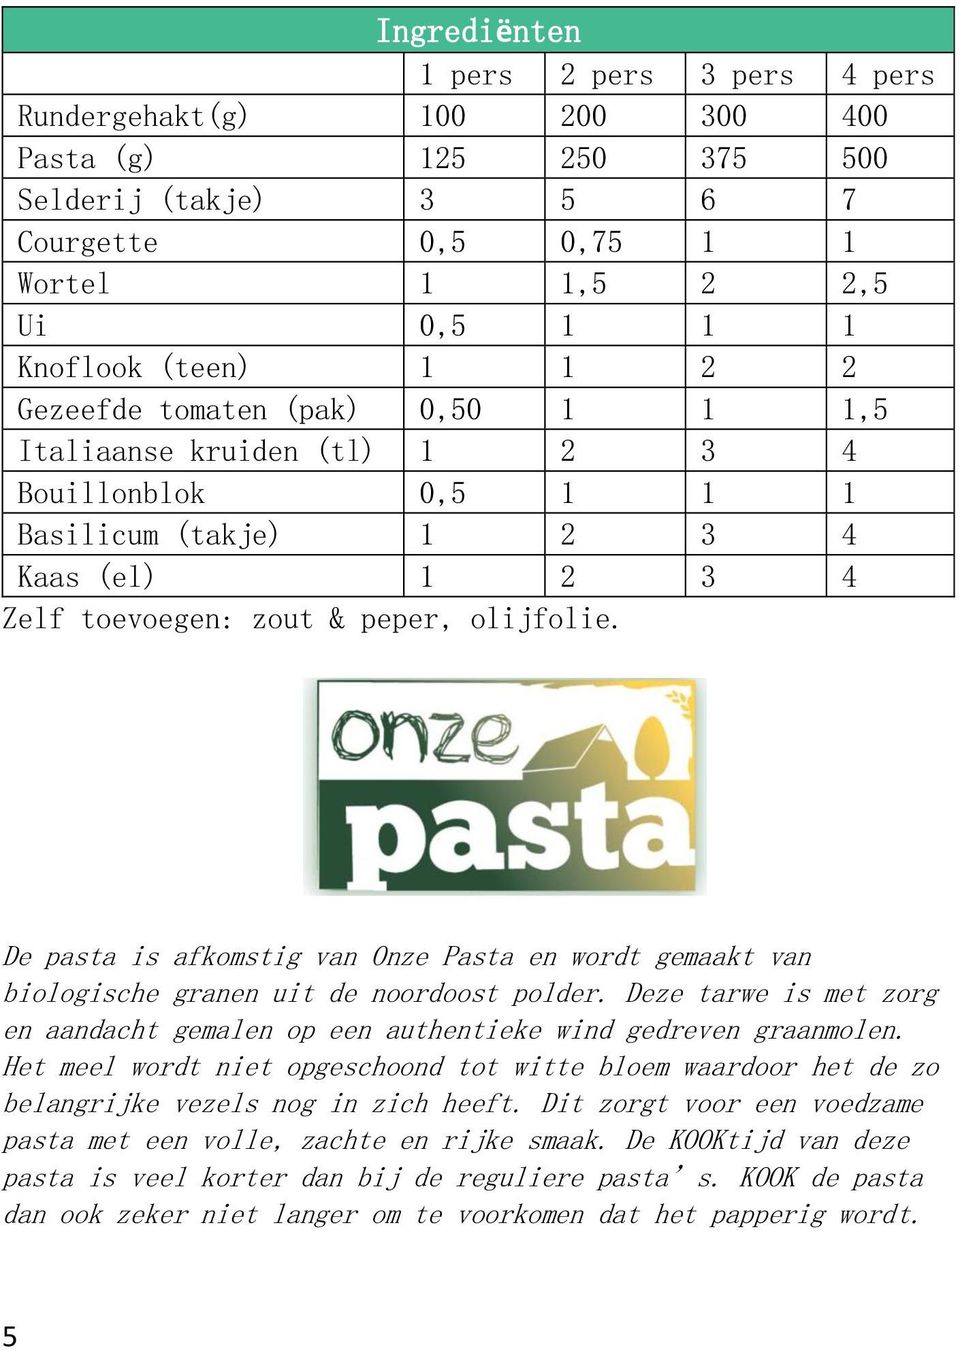 De pasta is afkomstig van Onze Pasta en wordt gemaakt van biologische granen uit de noordoost polder. Deze tarwe is met zorg en aandacht gemalen op een authentieke wind gedreven graanmolen.